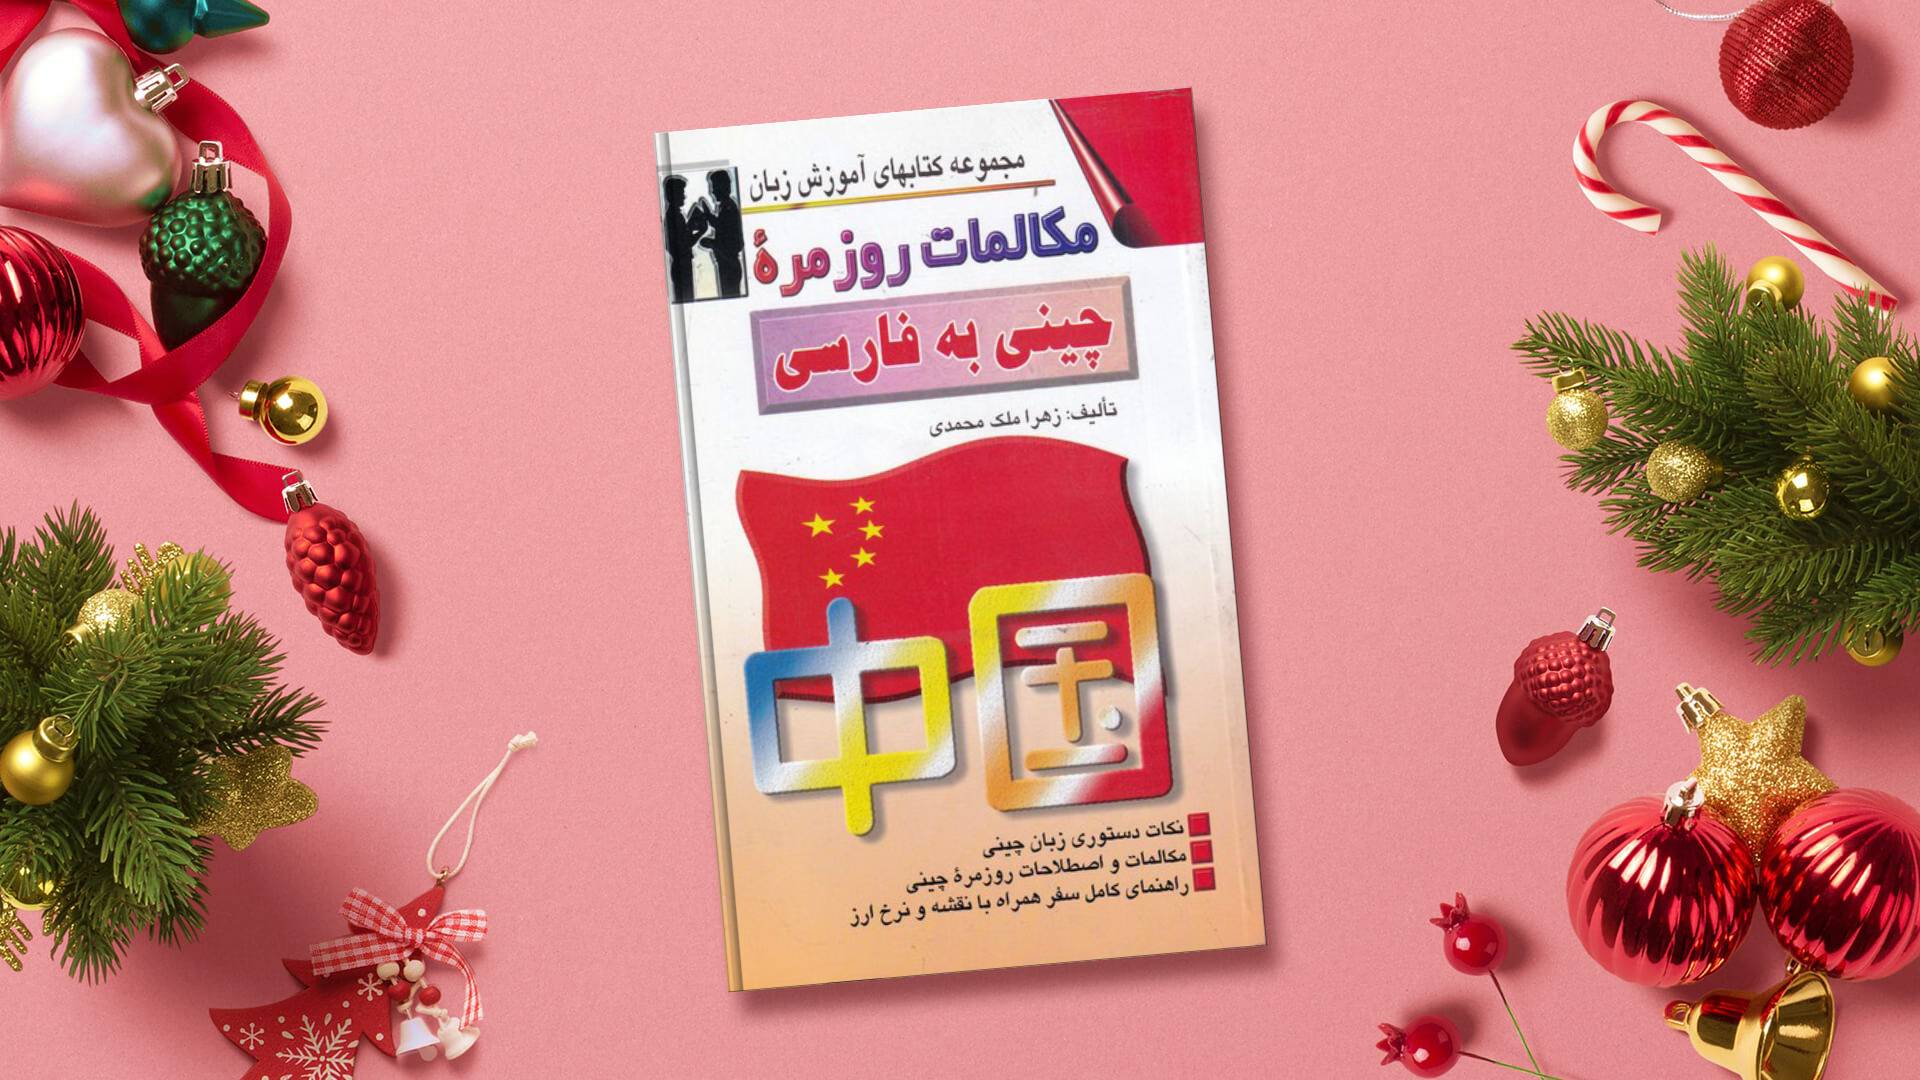 خرید کتاب زبان | زبان استور | کتاب خودآموز زبان چینی | کتاب مکالمات روزمره چینی به فارسی